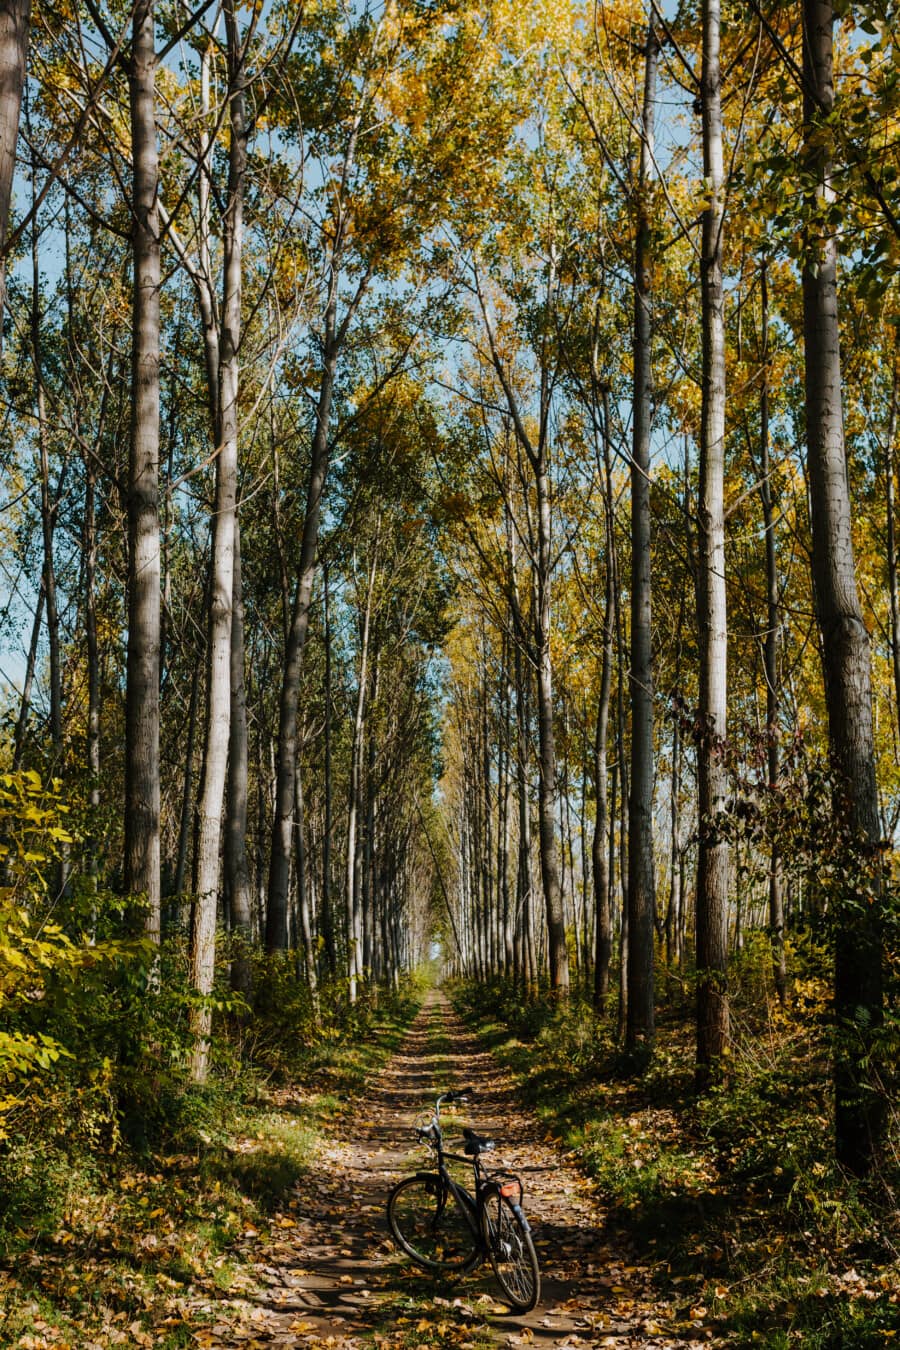 strada forestale, foresta, sentiero nel bosco, strada forestale, autunno, pioppo, biciclette, vecchio stile, classico, natura